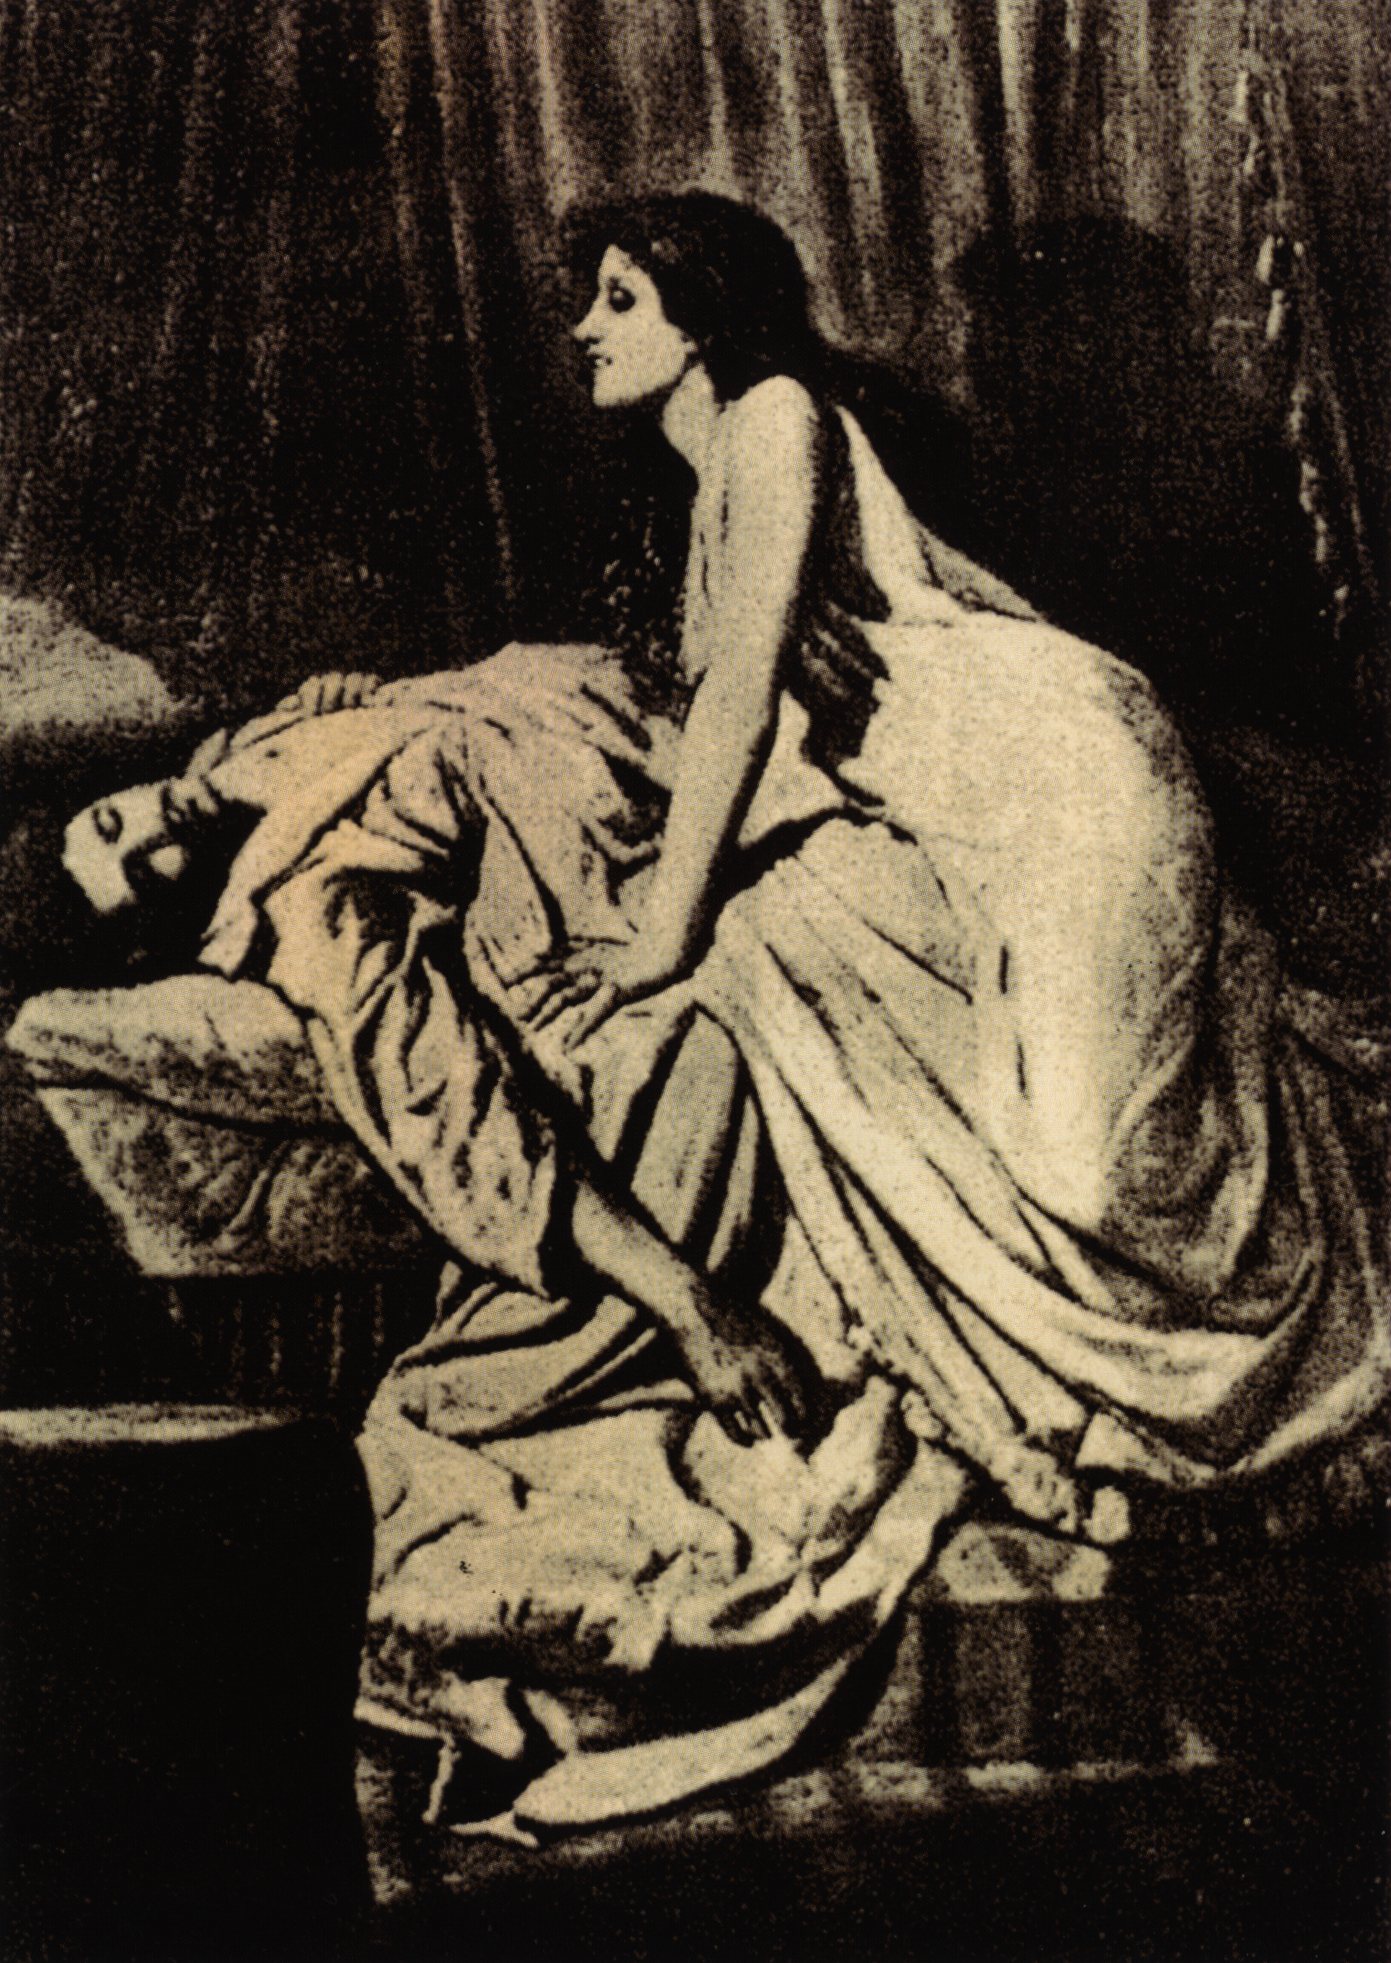 http://upload.wikimedia.org/wikipedia/commons/b/bc/Burne-Jones-le-Vampire.jpg